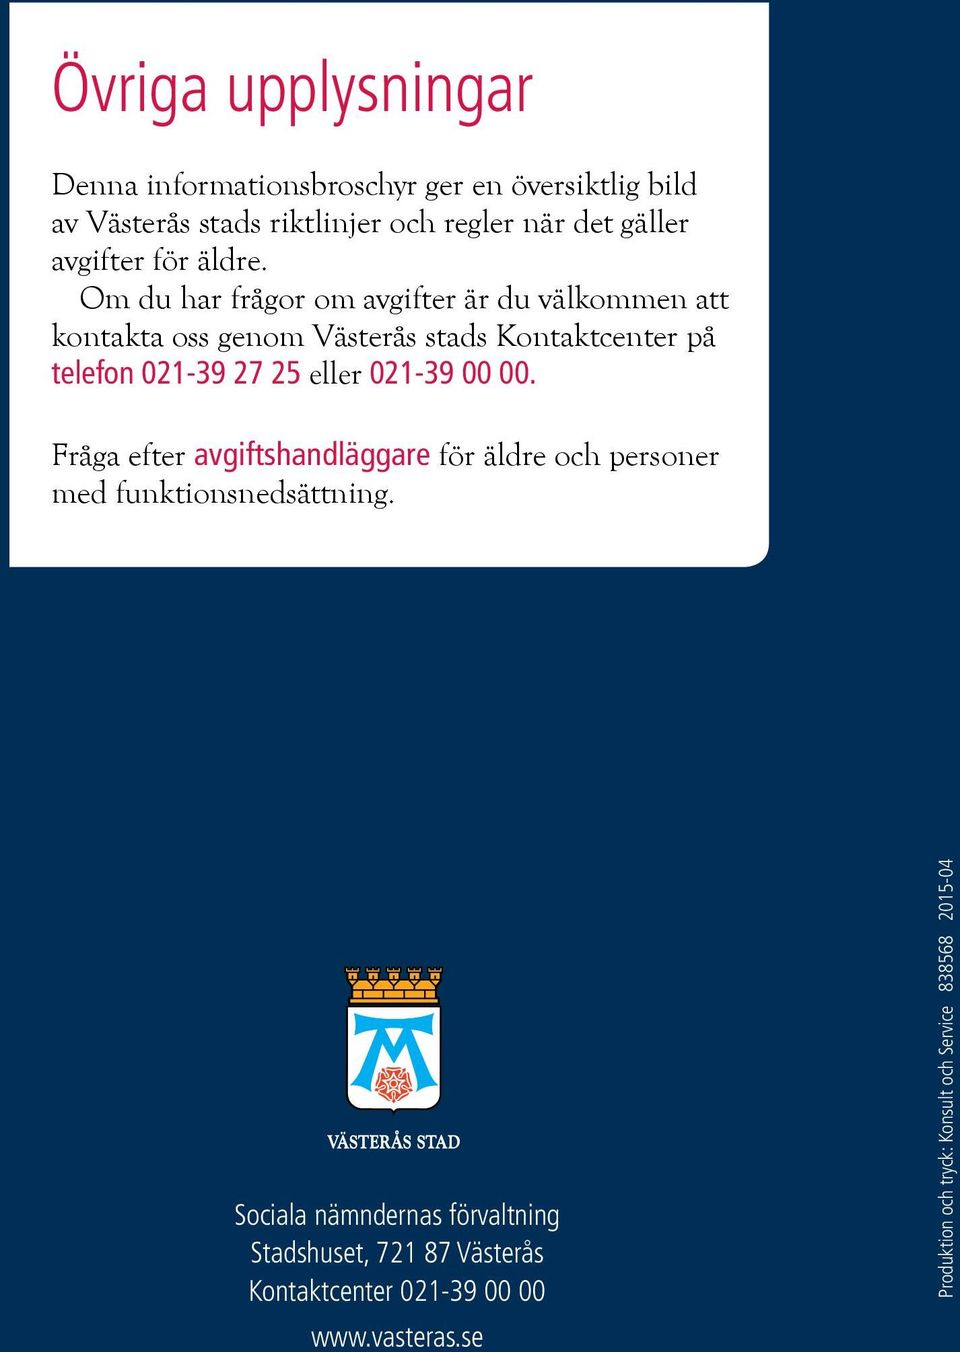 Om du har frågor om avgifter är du välkommen att kontakta oss genom Västerås stads Kontaktcenter på telefon 021-39 27 25 eller